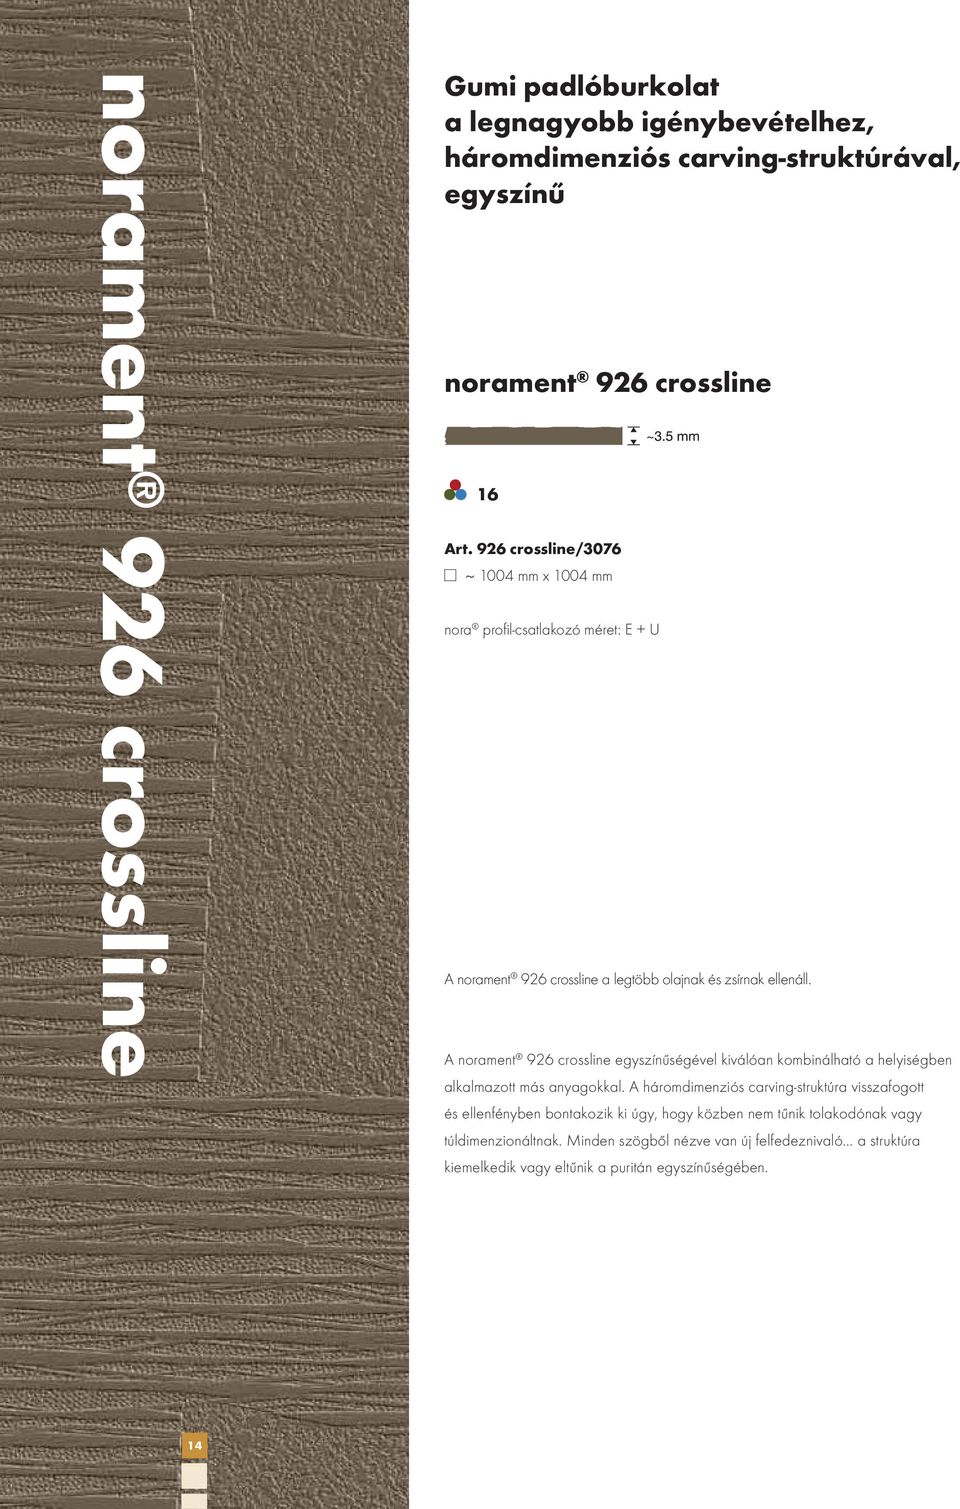 A norament 926 crossline egyszínűségével kiválóan kombinálható a helyiségben alkalmazott más anyagokkal.